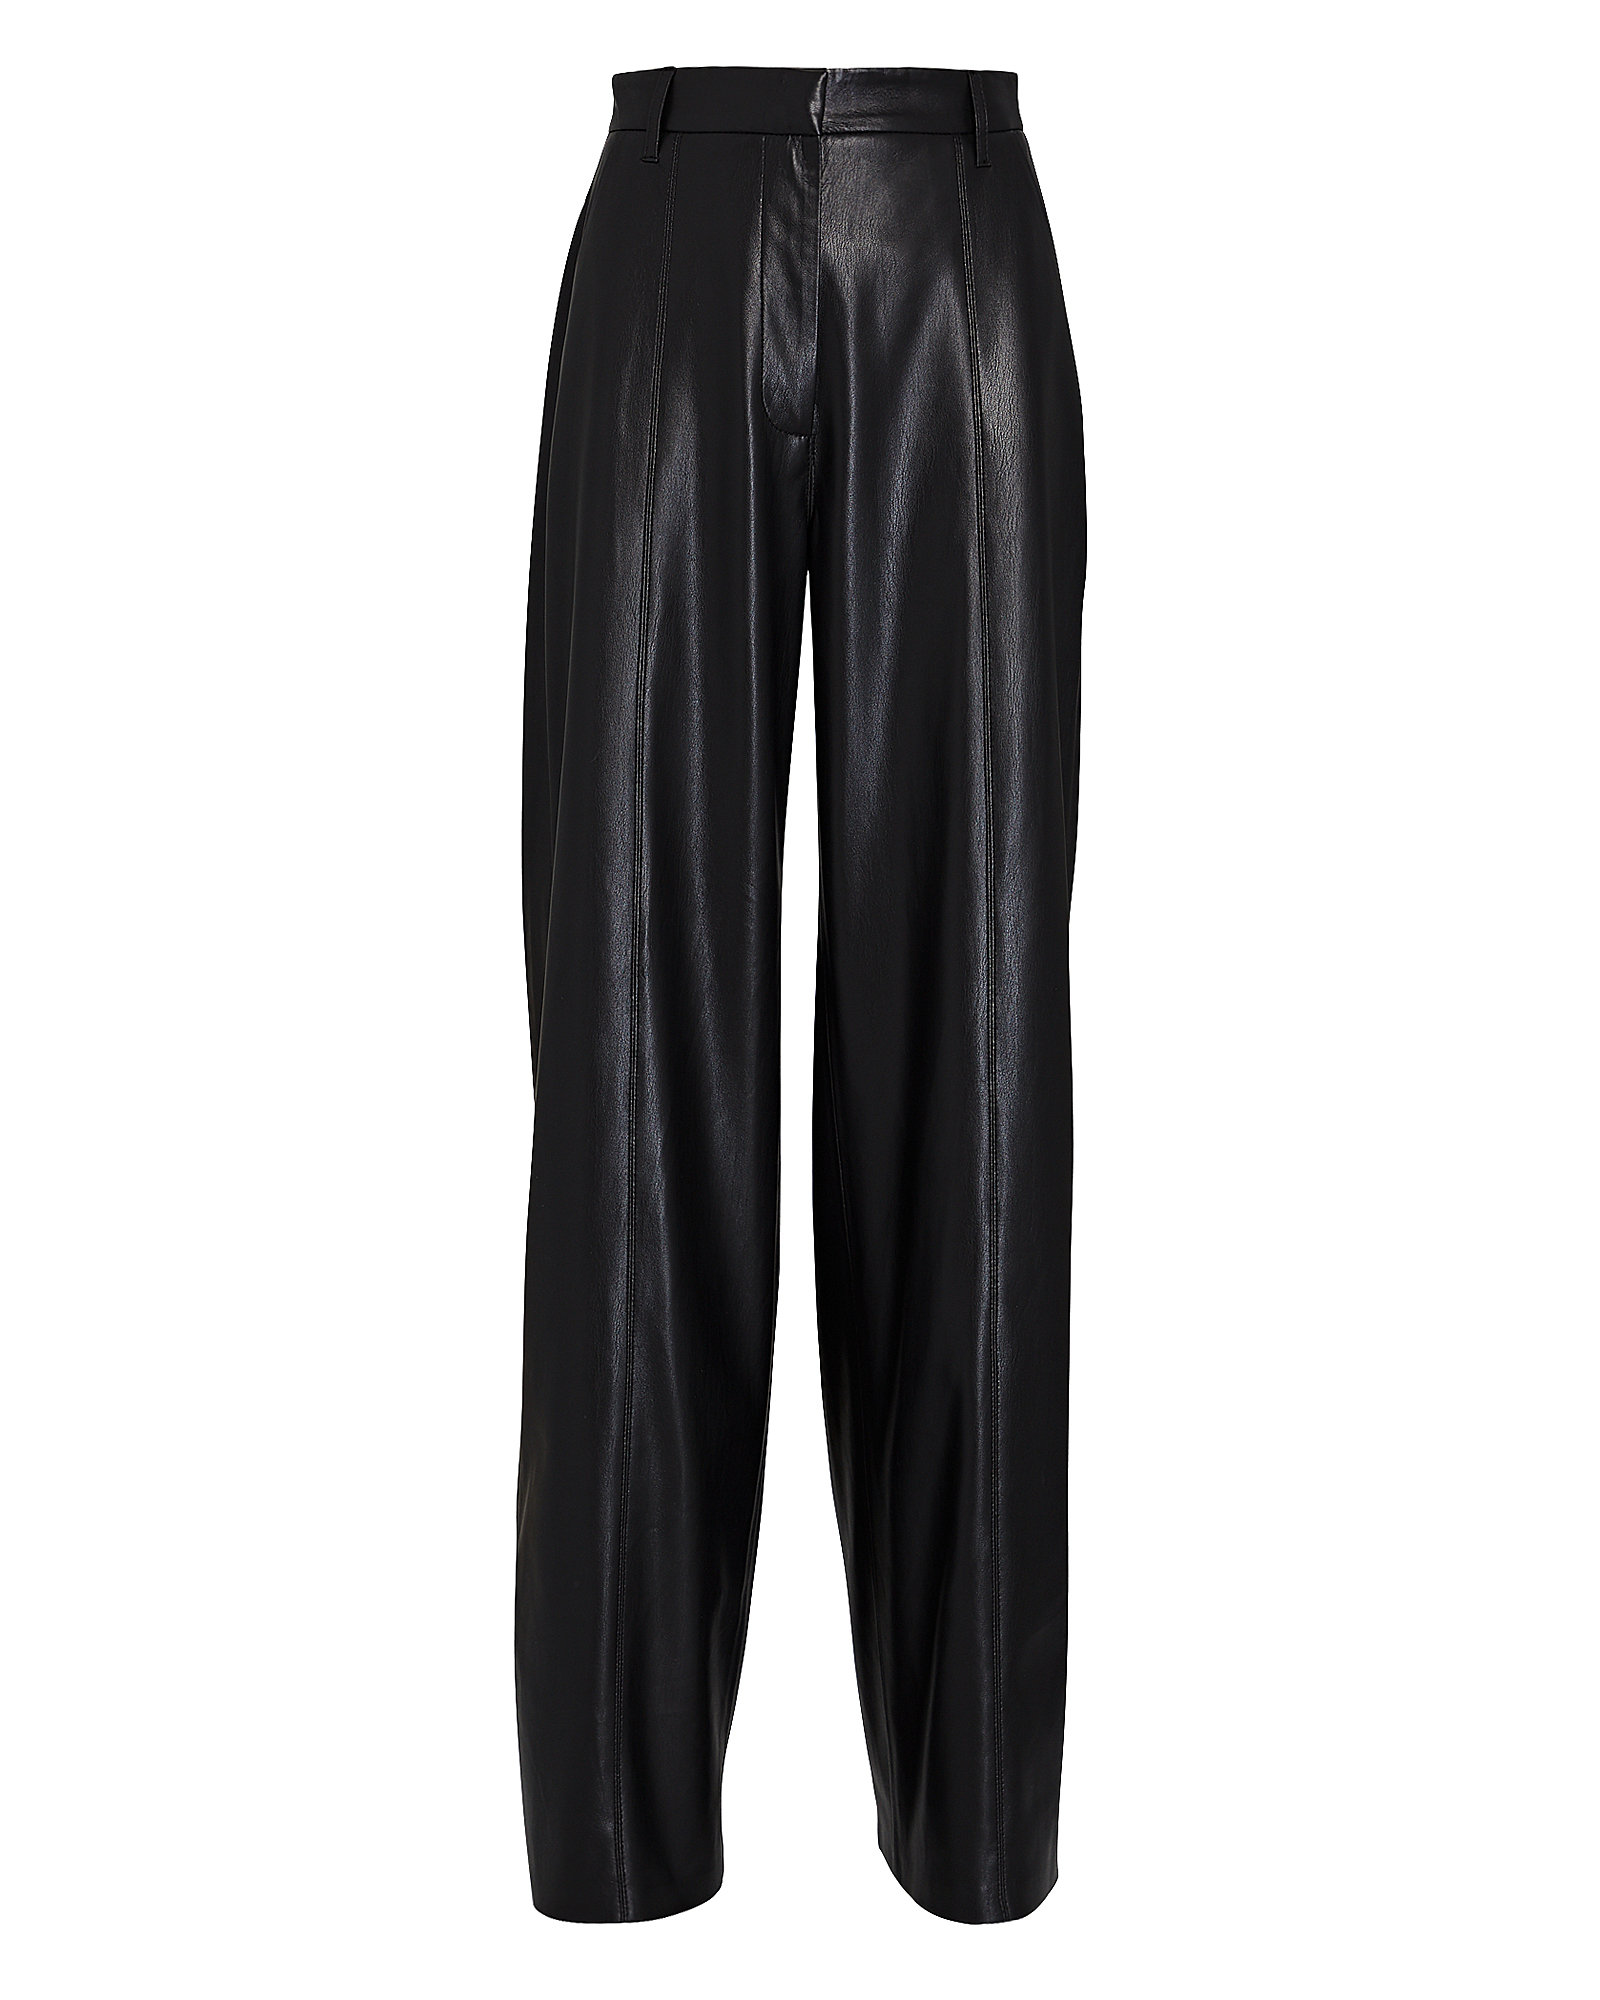 Nanushka Cleo Wide-Leg Vegan Leather Pants | INTERMIX®